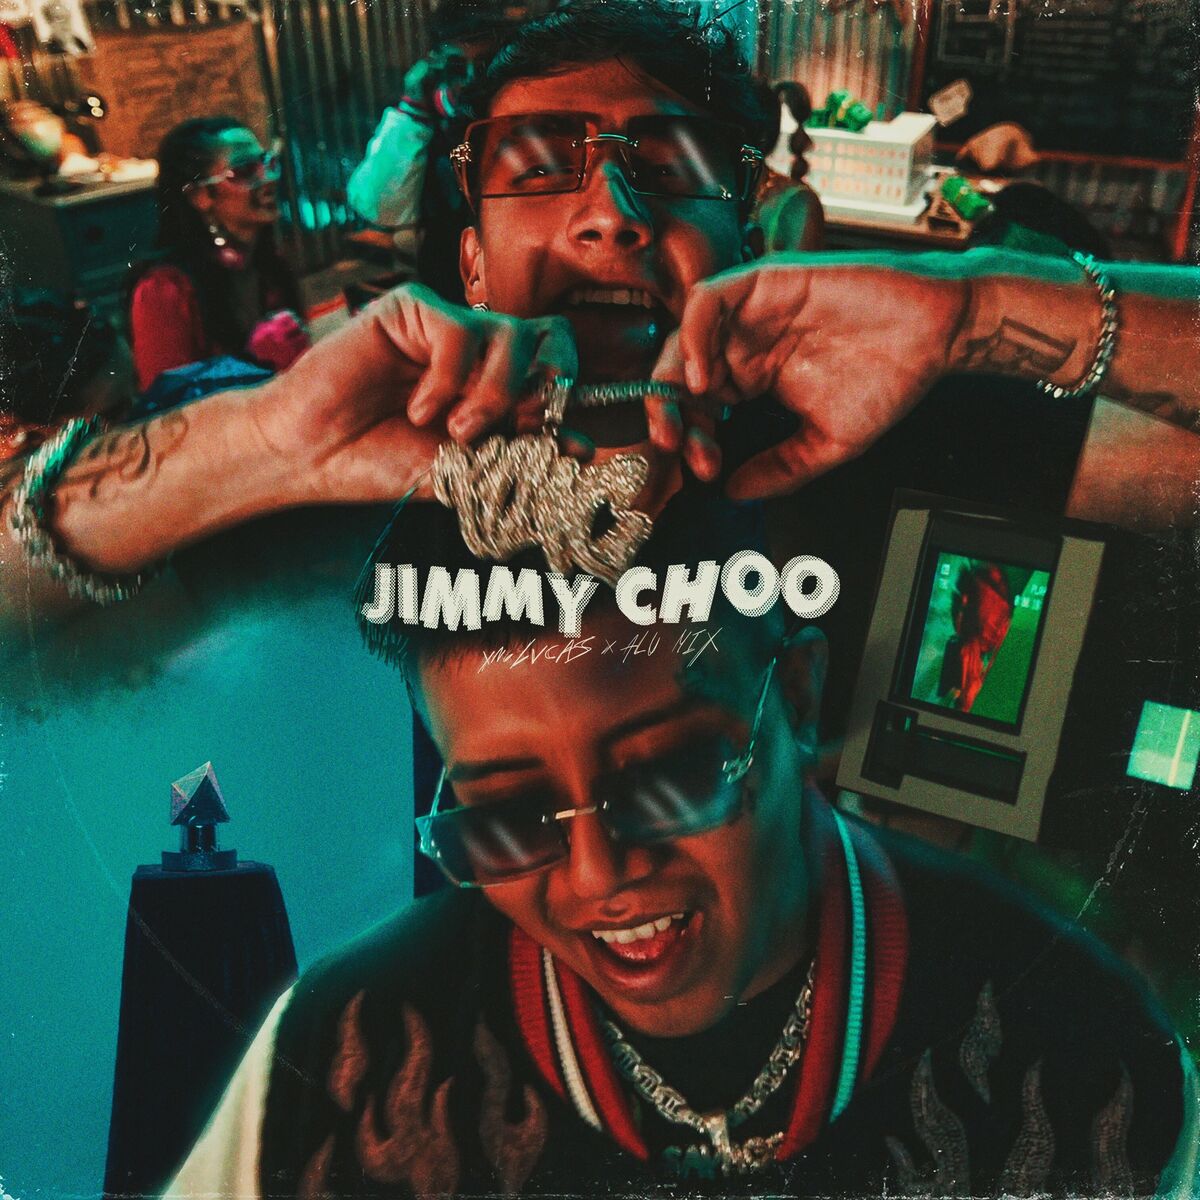 Jimmy Choo: Yng Lvcas, Alu Mix – Jimmy Choo